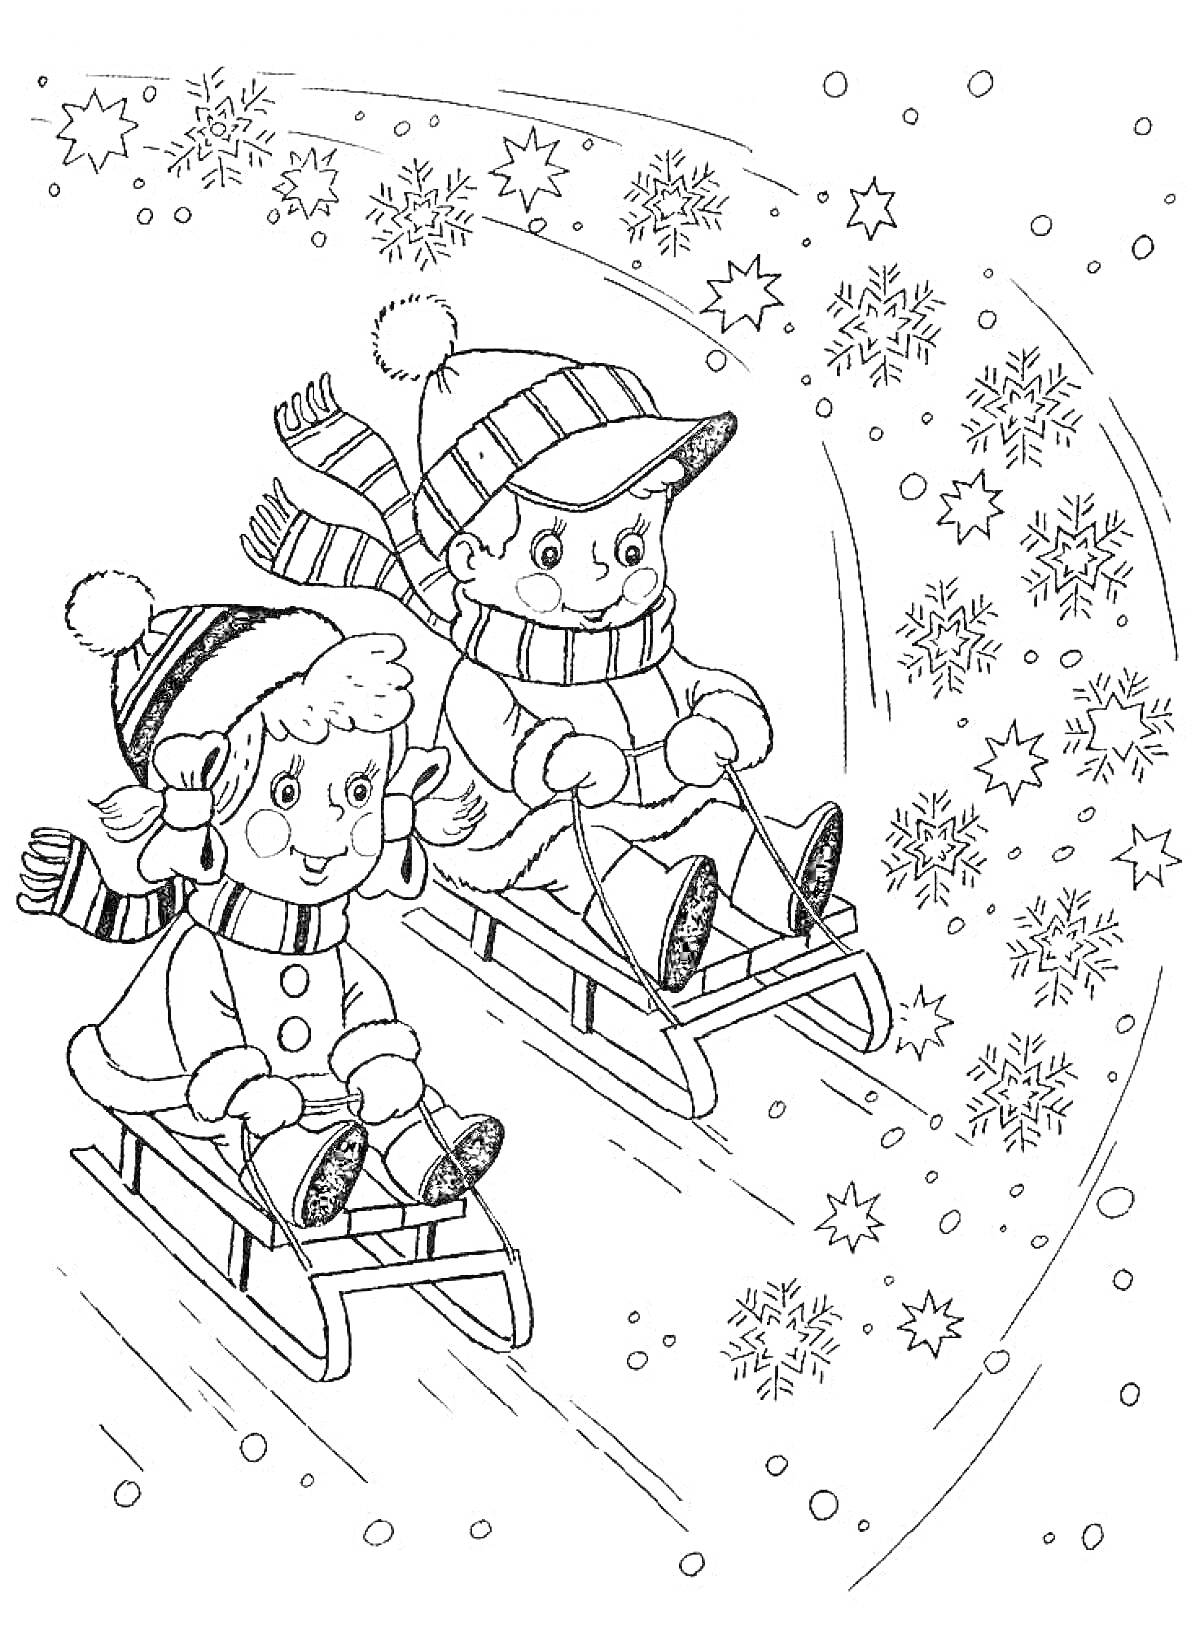 Раскраска Дети на санках среди падающих звезд и снежинок